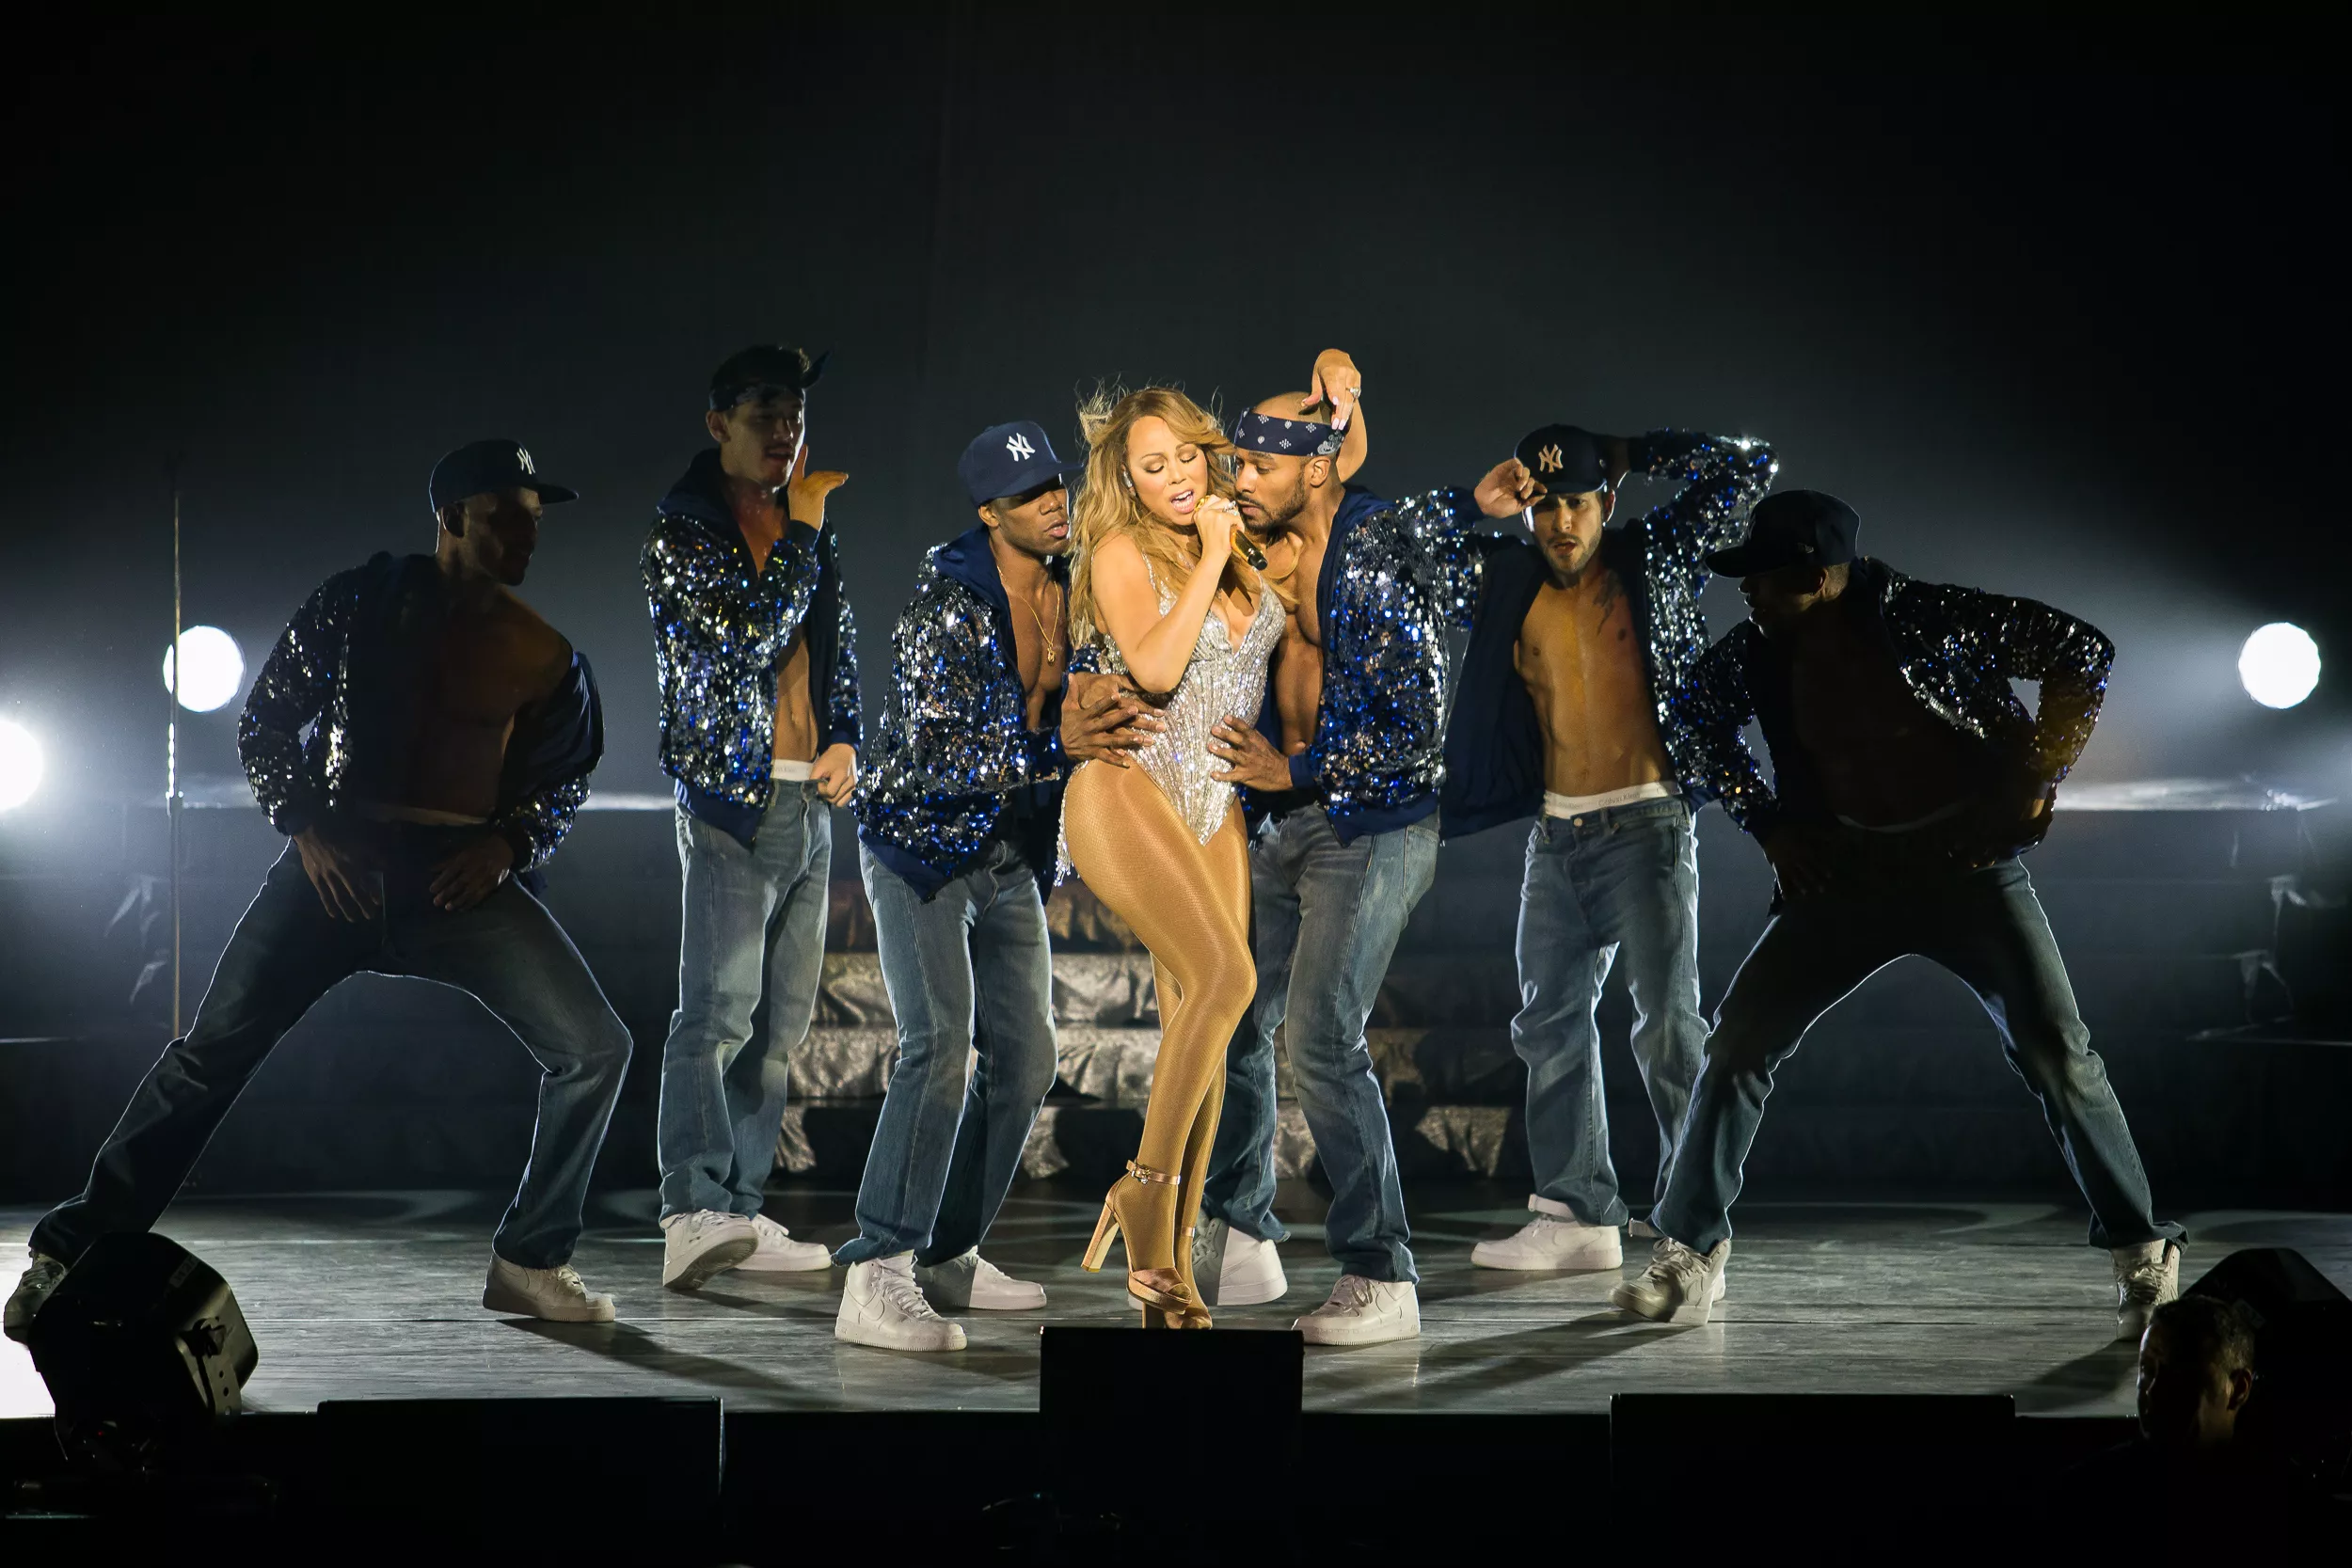 Sidste år gik alt galt: Nu vender Mariah Carey tilbage til Times Square nytårsaften